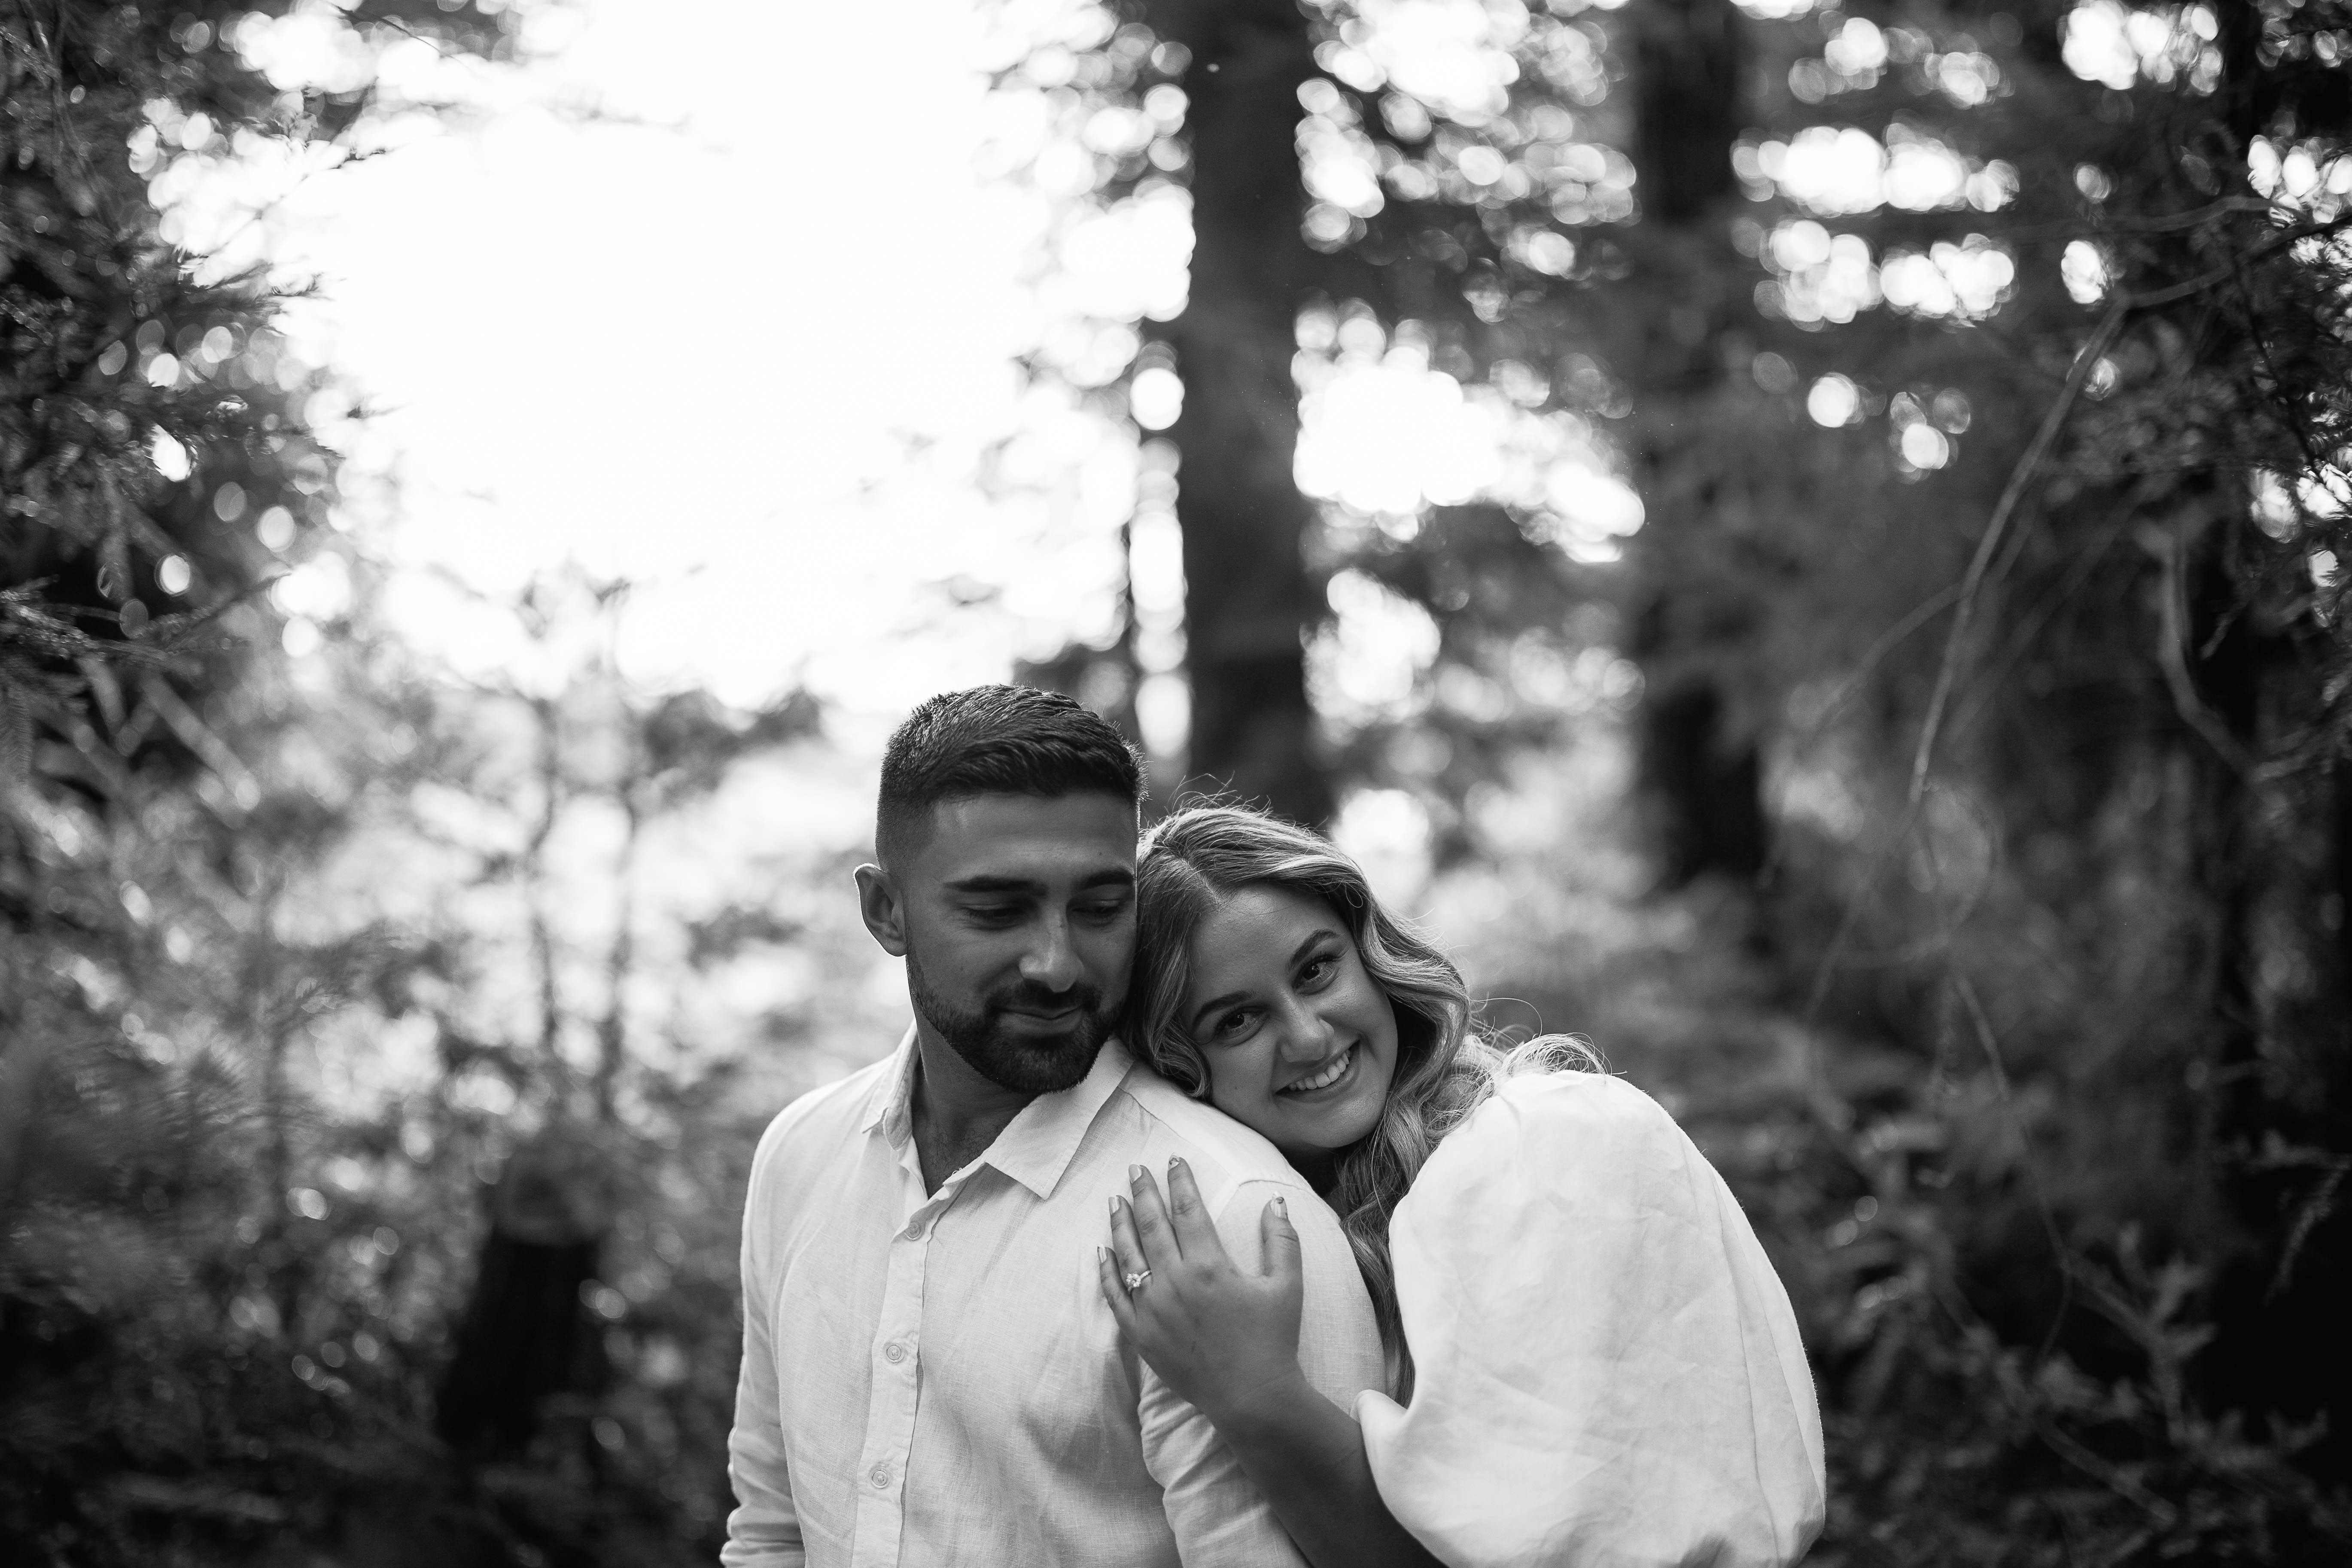 The Wedding Website of Nikoletta Karagiannidis and Tanveer Anand